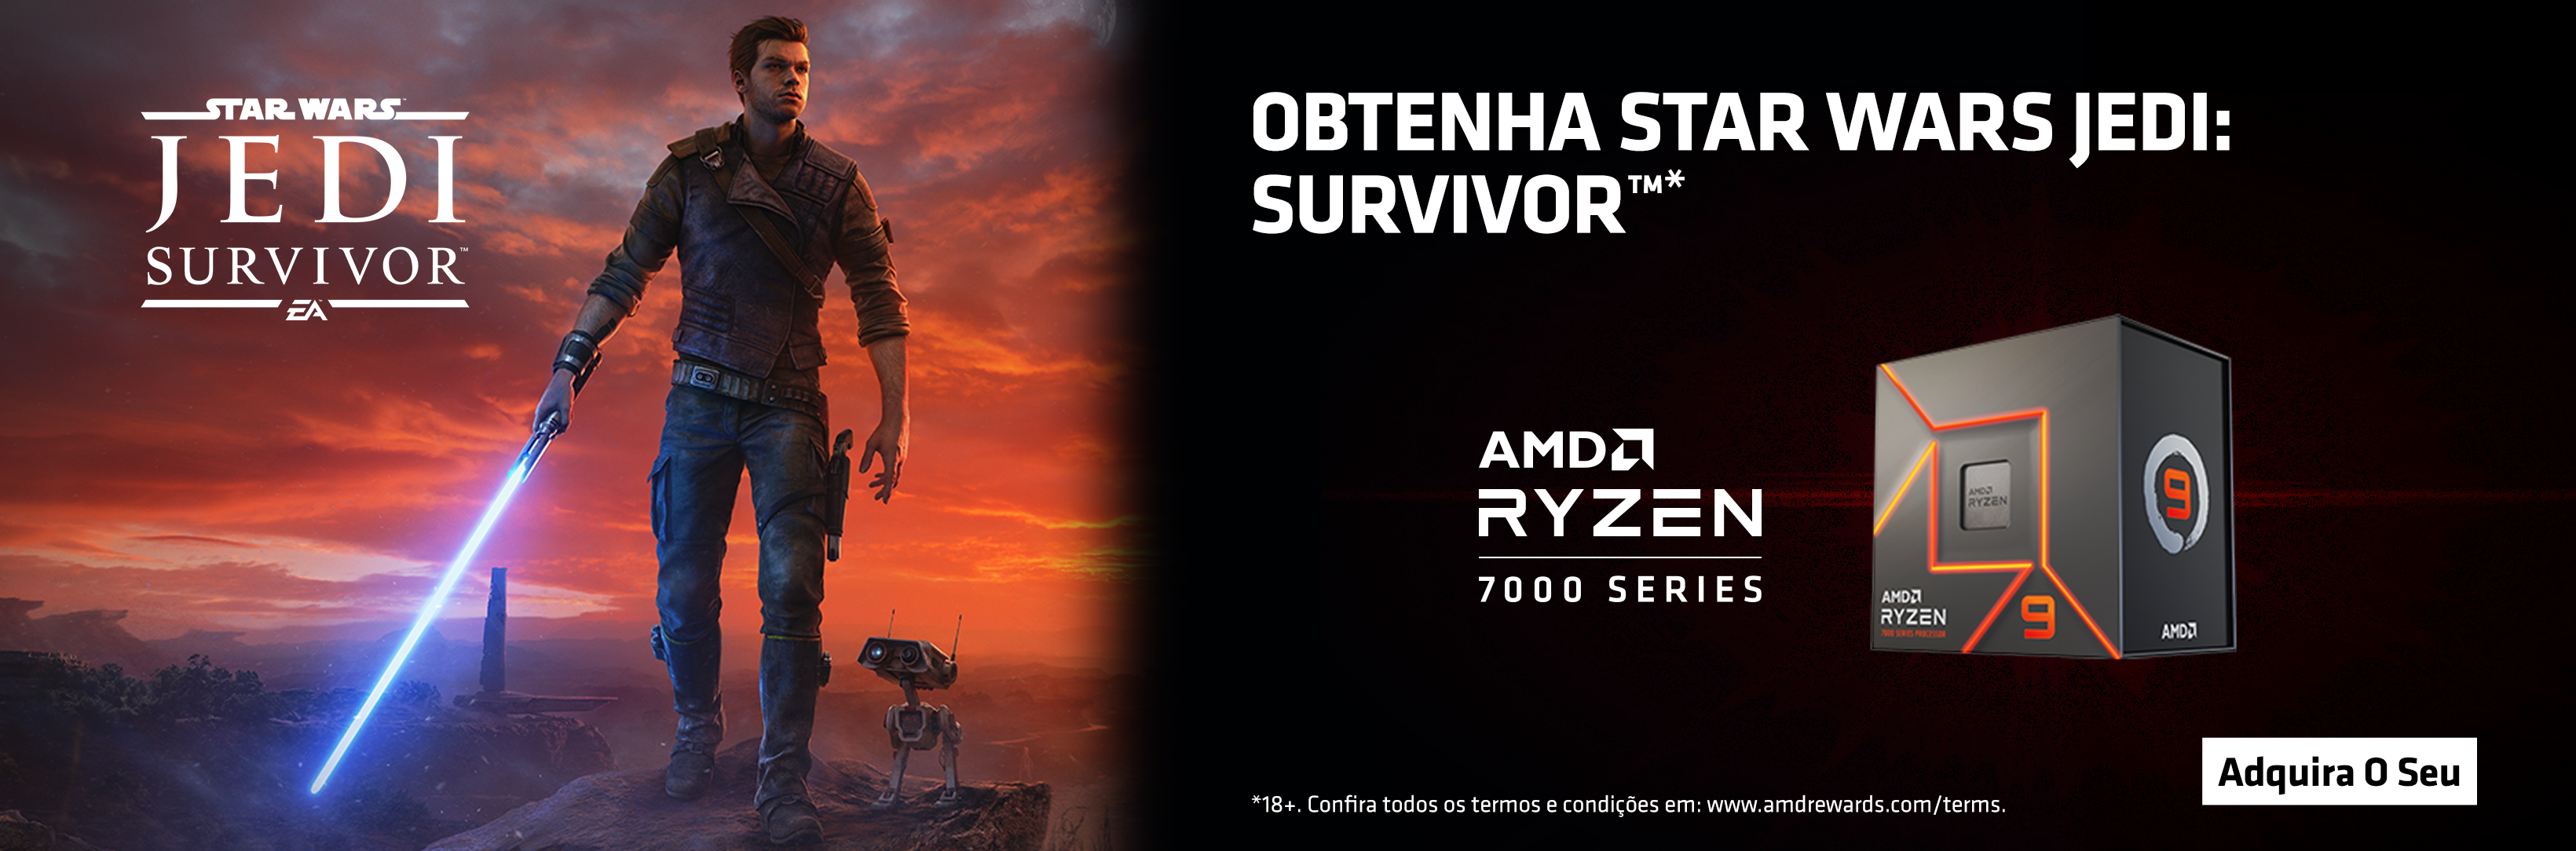 AMD Ryzen 7000 Series STAR WARS Jedi Survivor Bundle